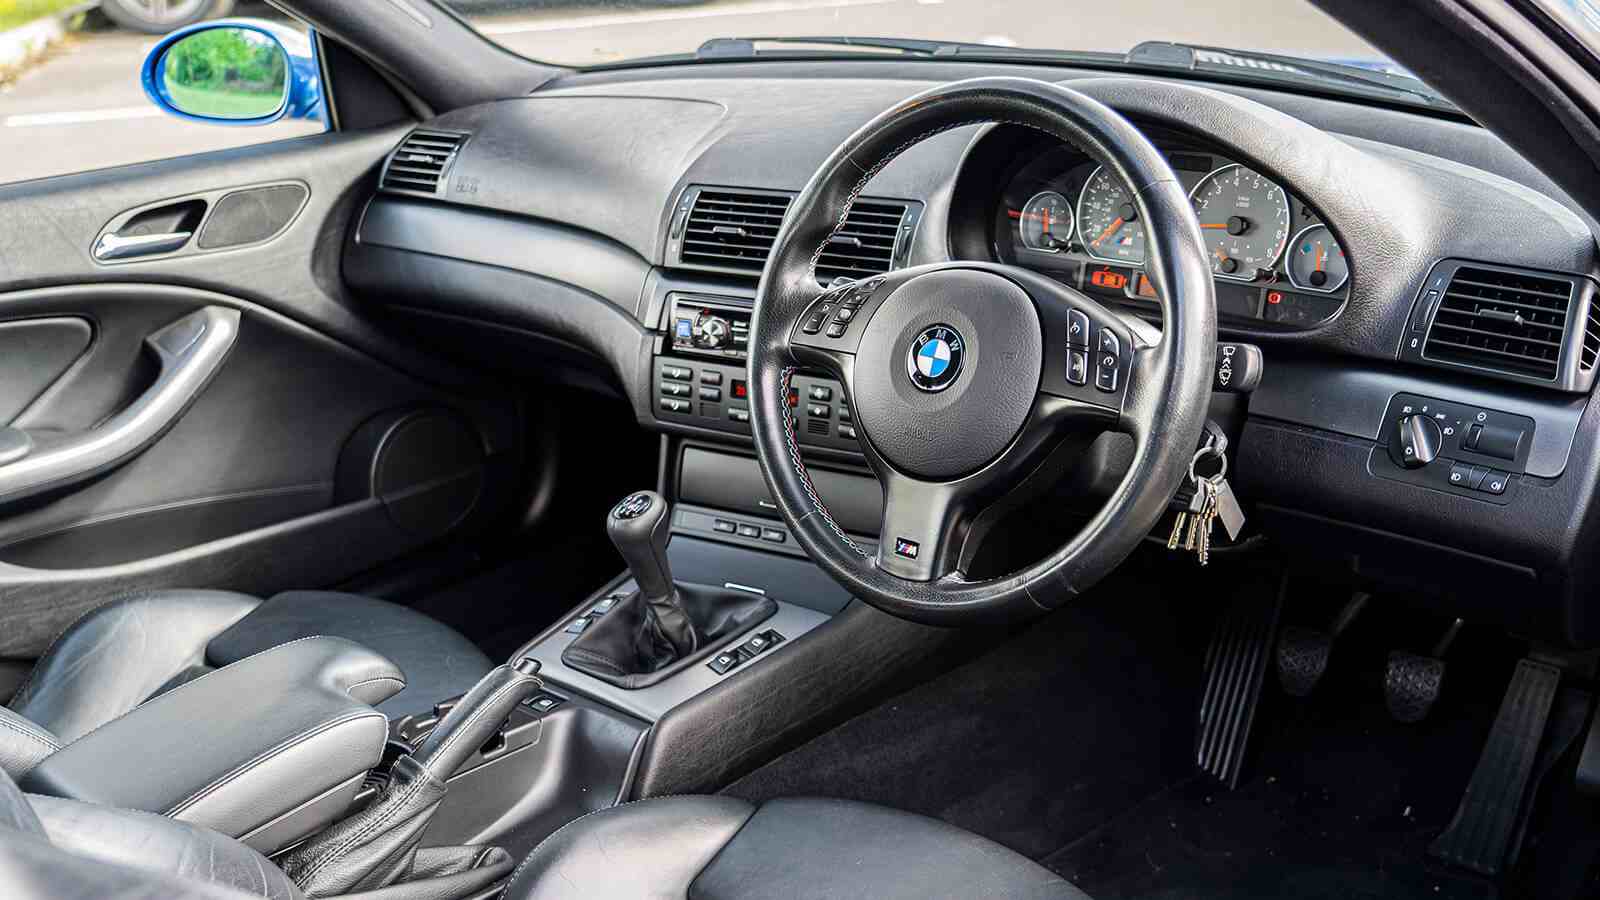 Win a BMW e46 M3 + £2,000